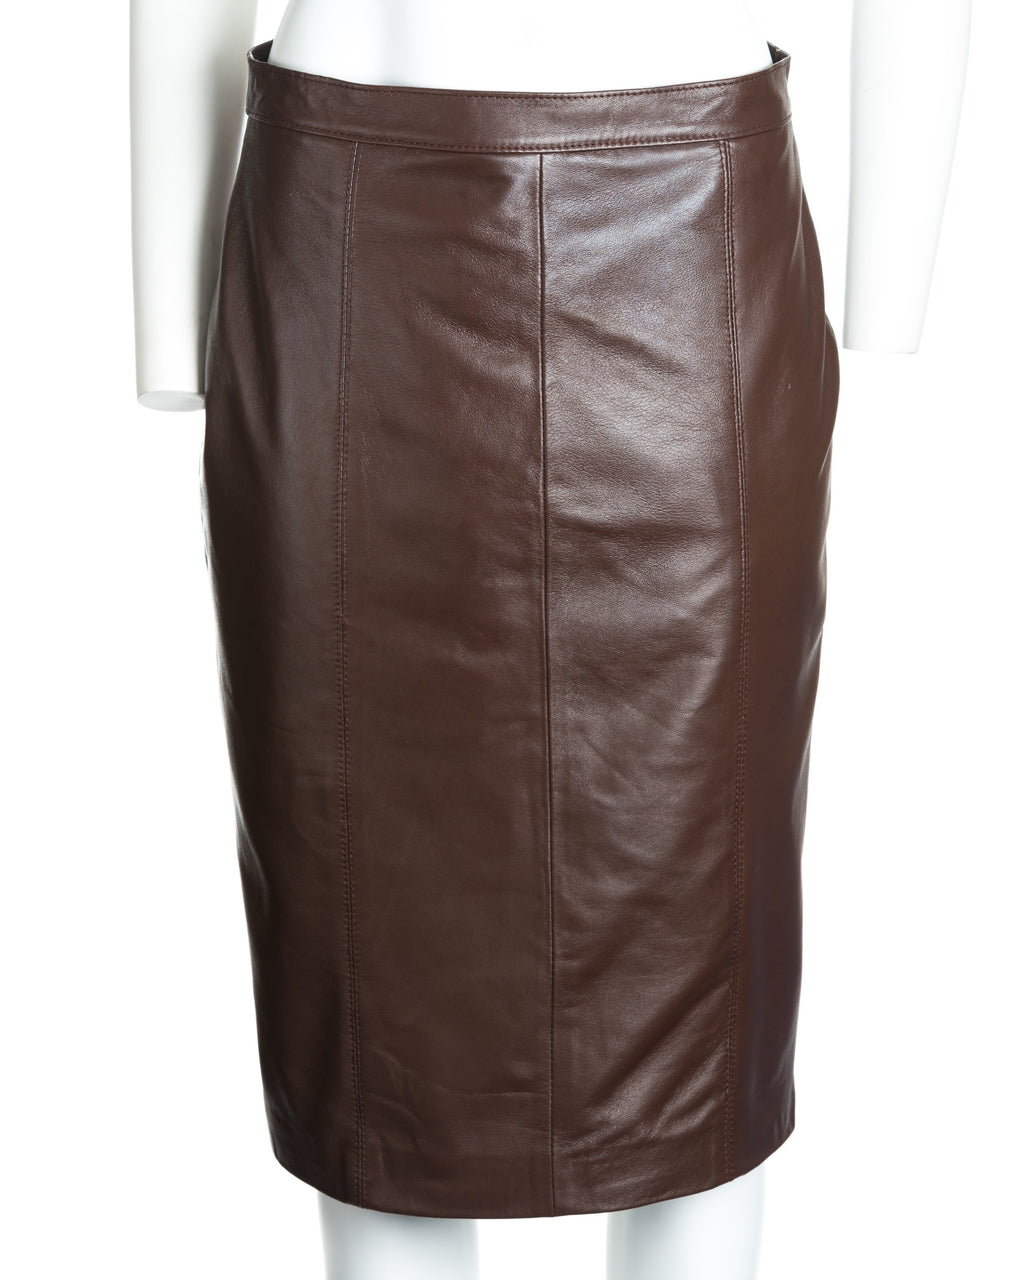 Ladies 21" Leather Skirt